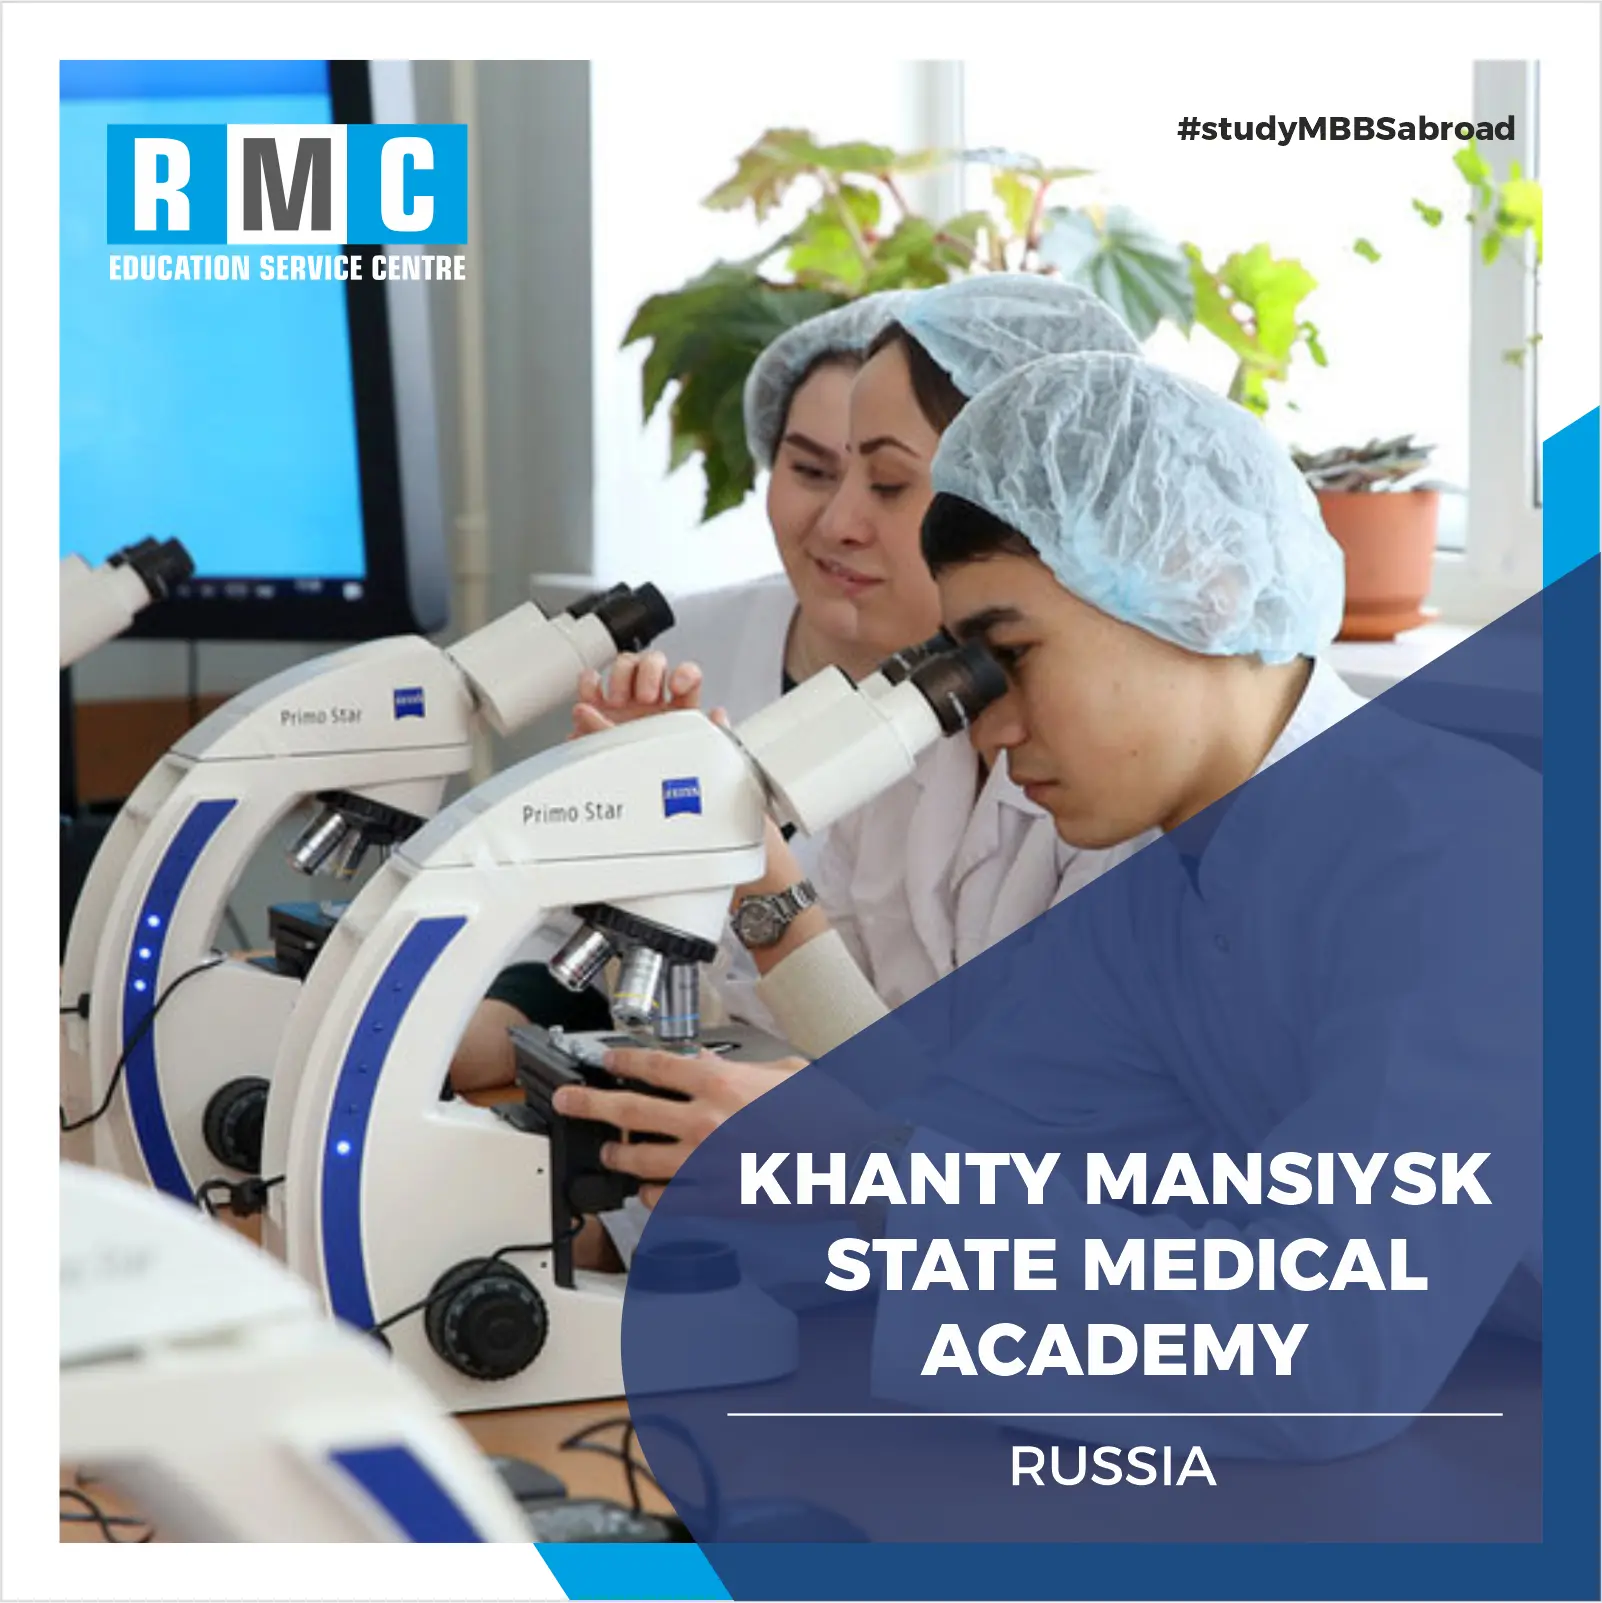 Khanty Mansiysk State Medical Academy